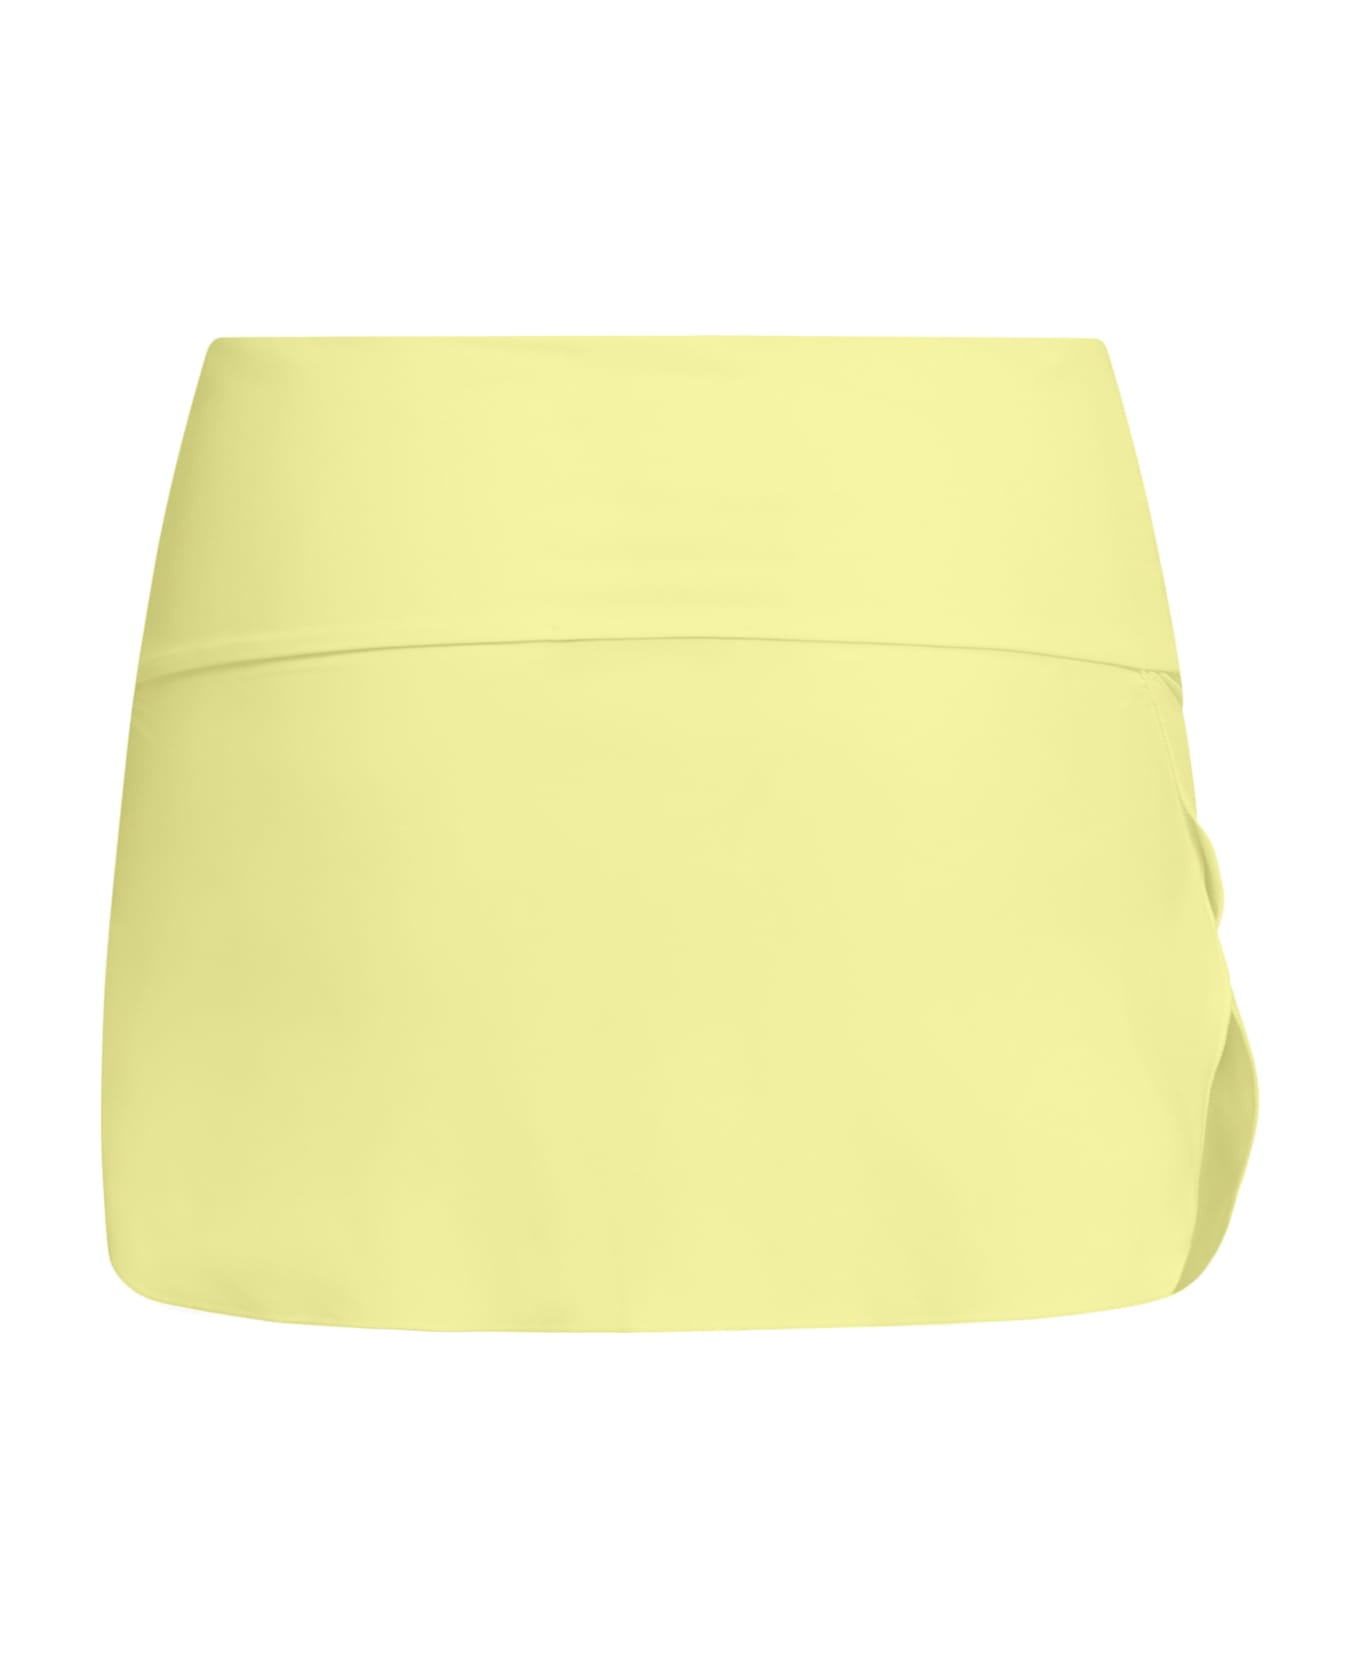 Sucrette Pareo Skirt - Giallo